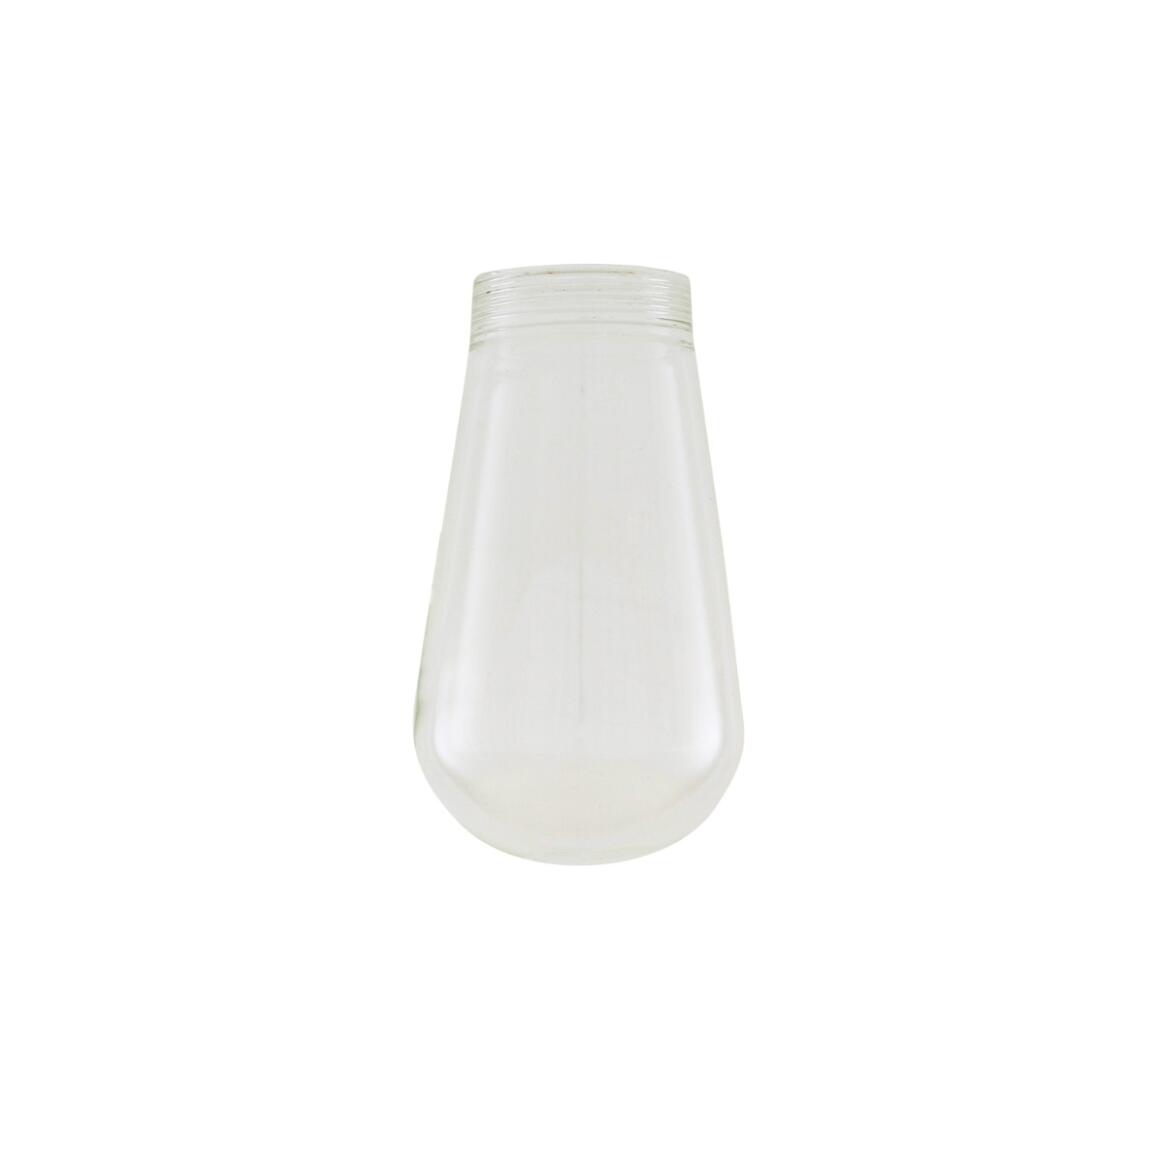 Remplacement de l'abat-jour en verre imperméable de la lampe Mullan main product image